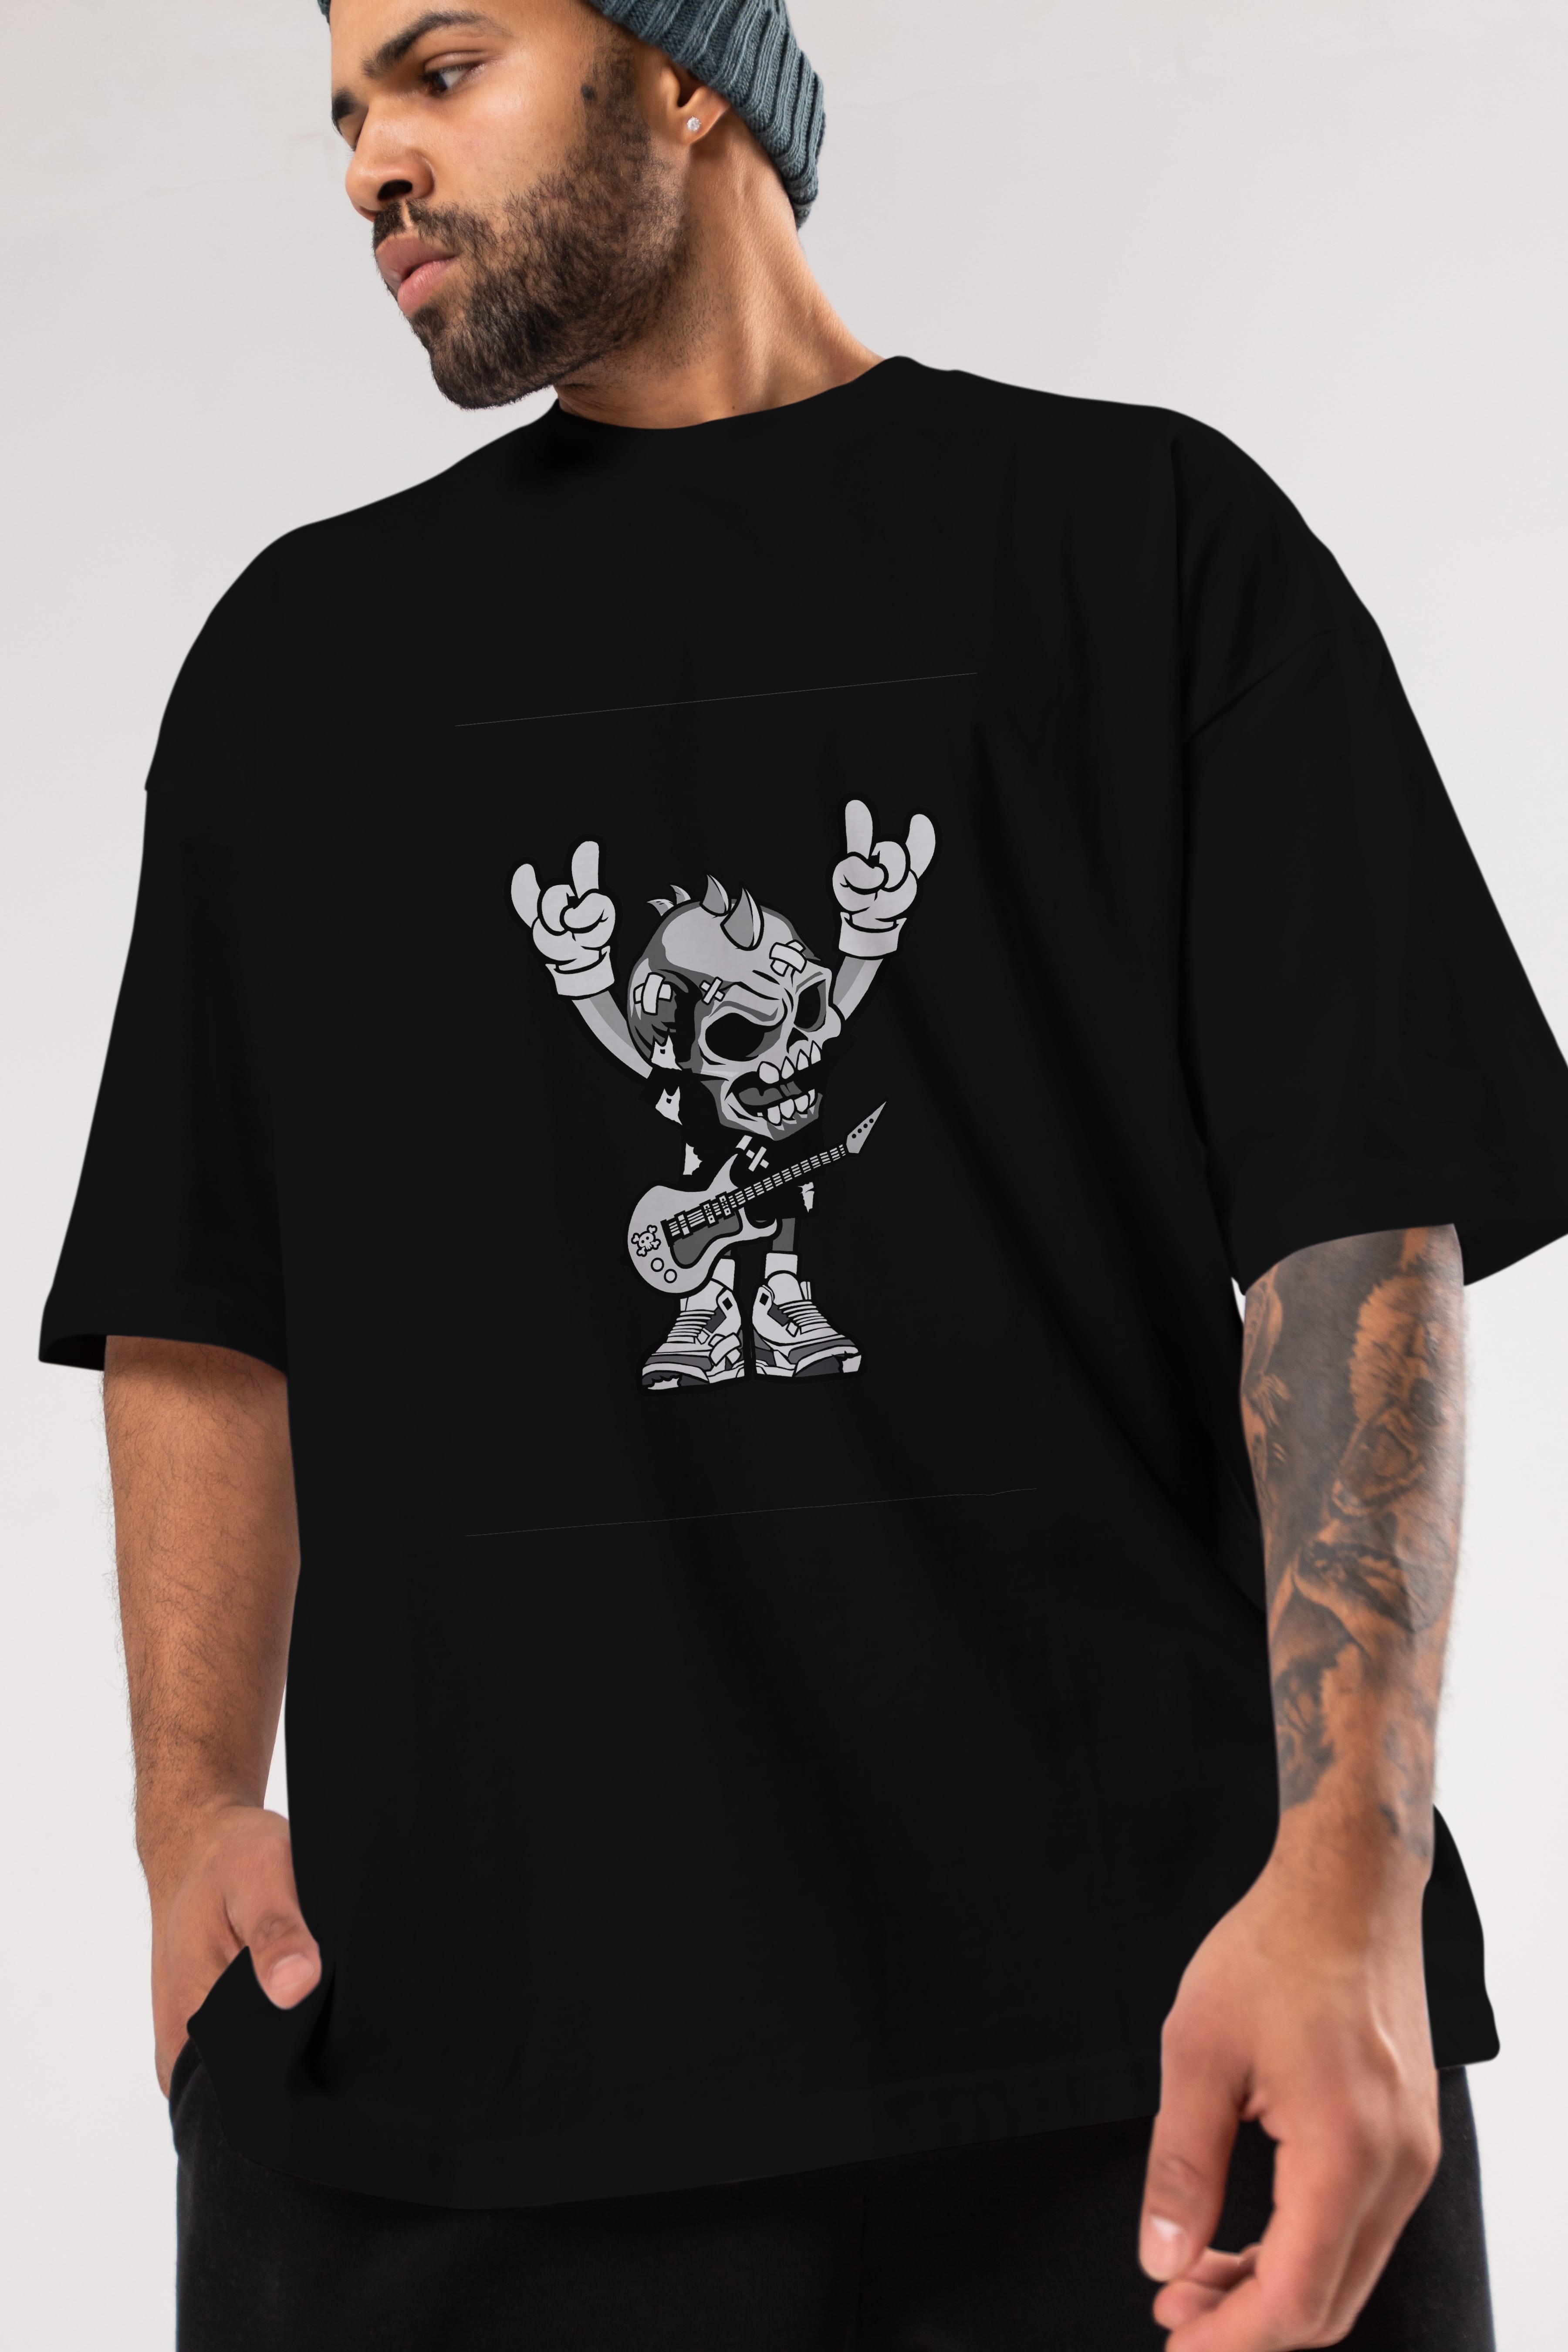 Punk Rock Skull Ön Baskılı Oversize t-shirt Erkek Kadın Unisex %100 Pamuk tişort